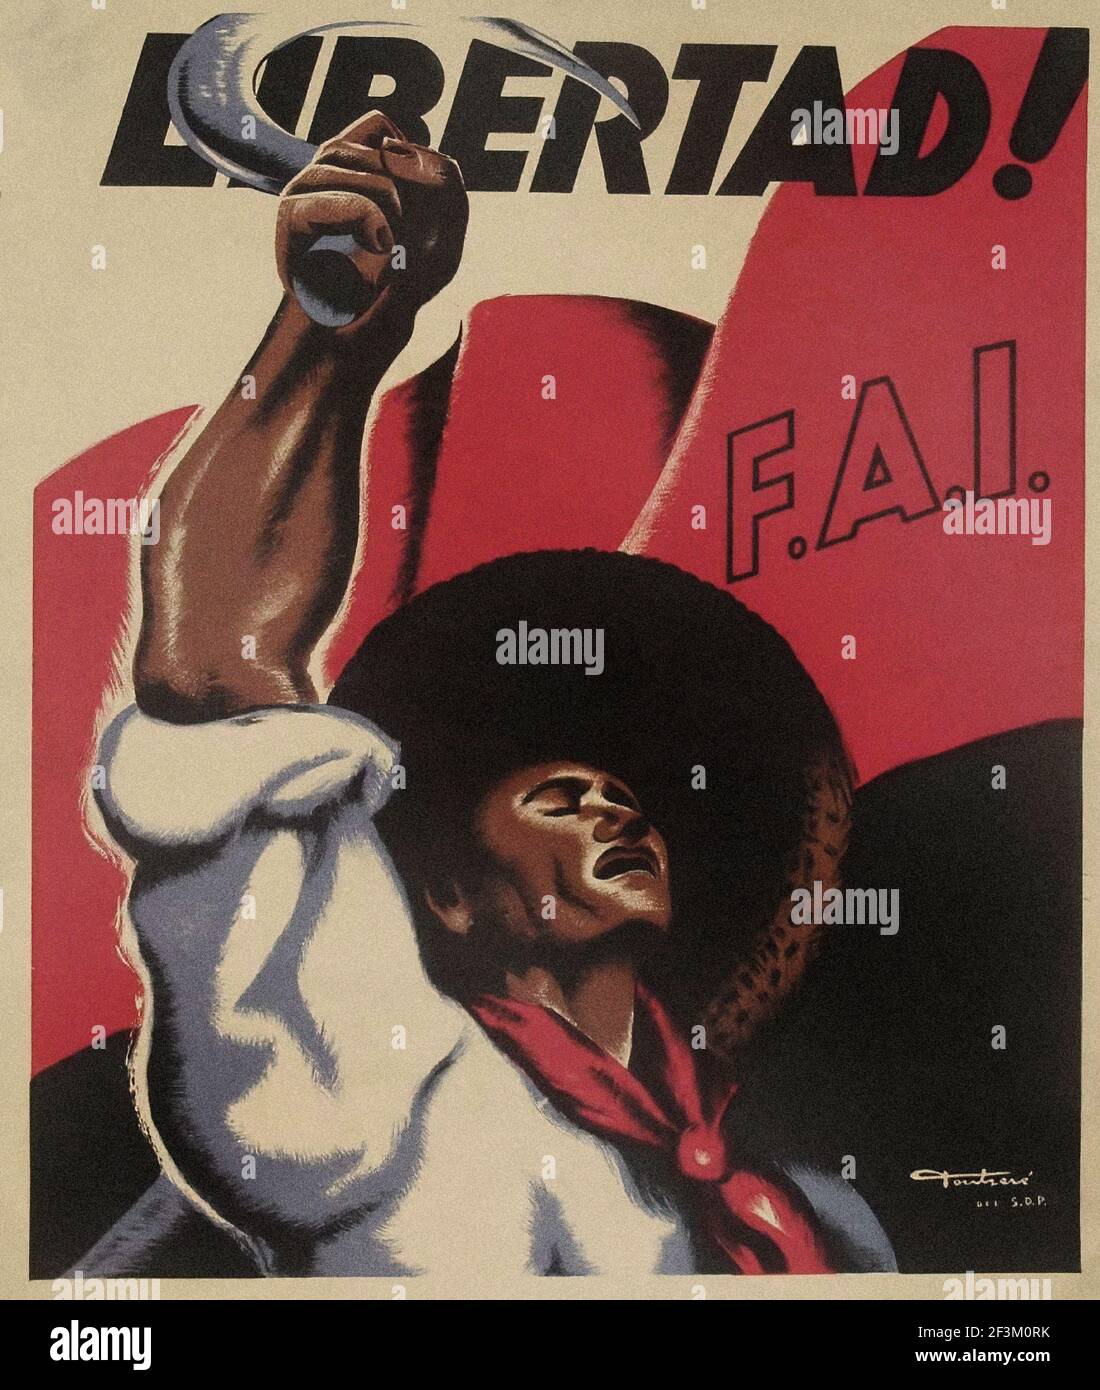 Affiche de propagande espagnole de la guerre de Sécession. Liberté ! 1936-1939 Banque D'Images